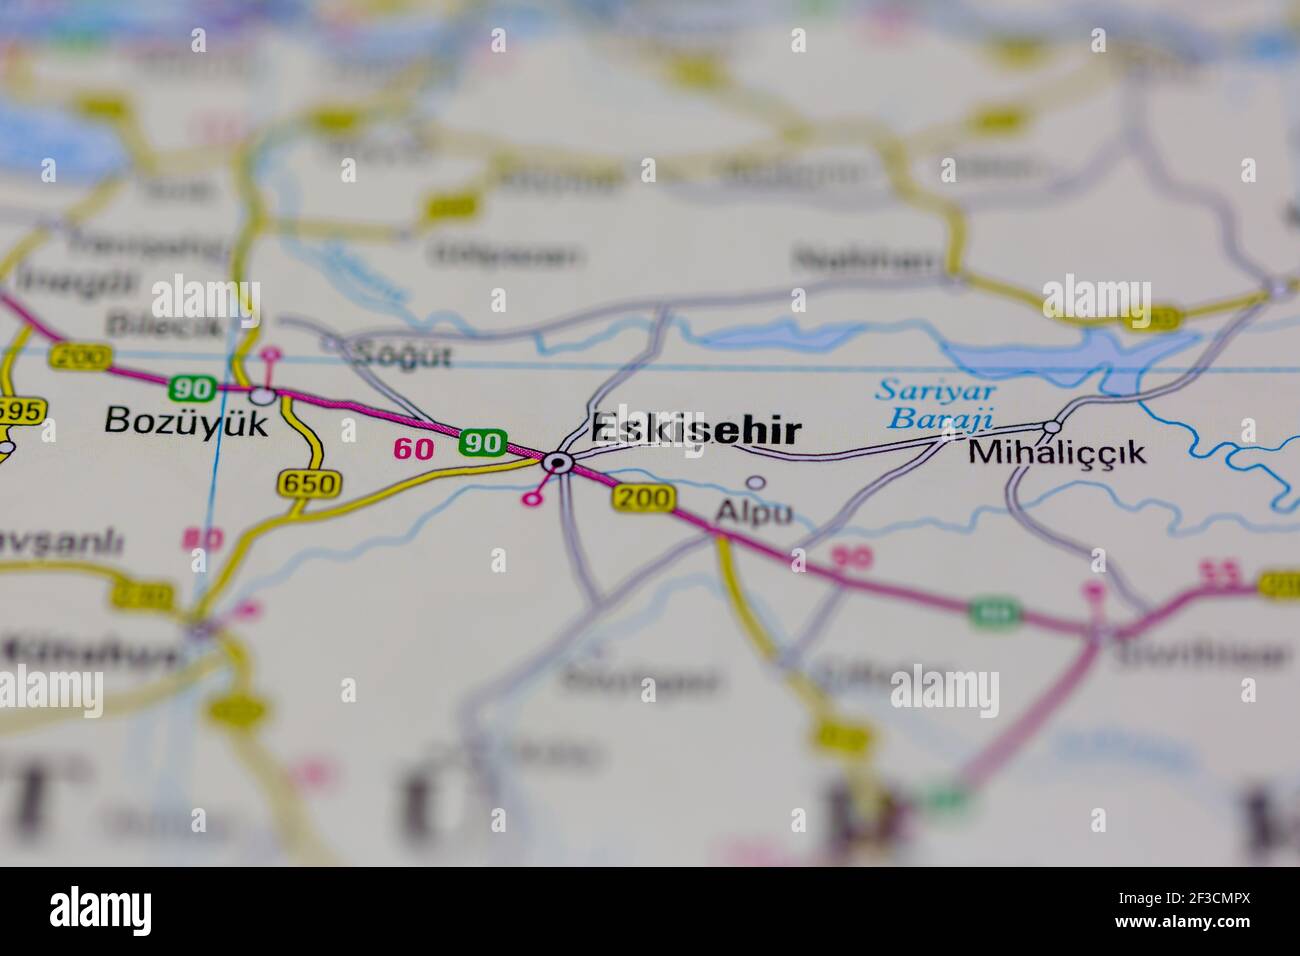 Eskisehir auf einer Geographie-Karte oder Straßenkarte angezeigt Stockfoto